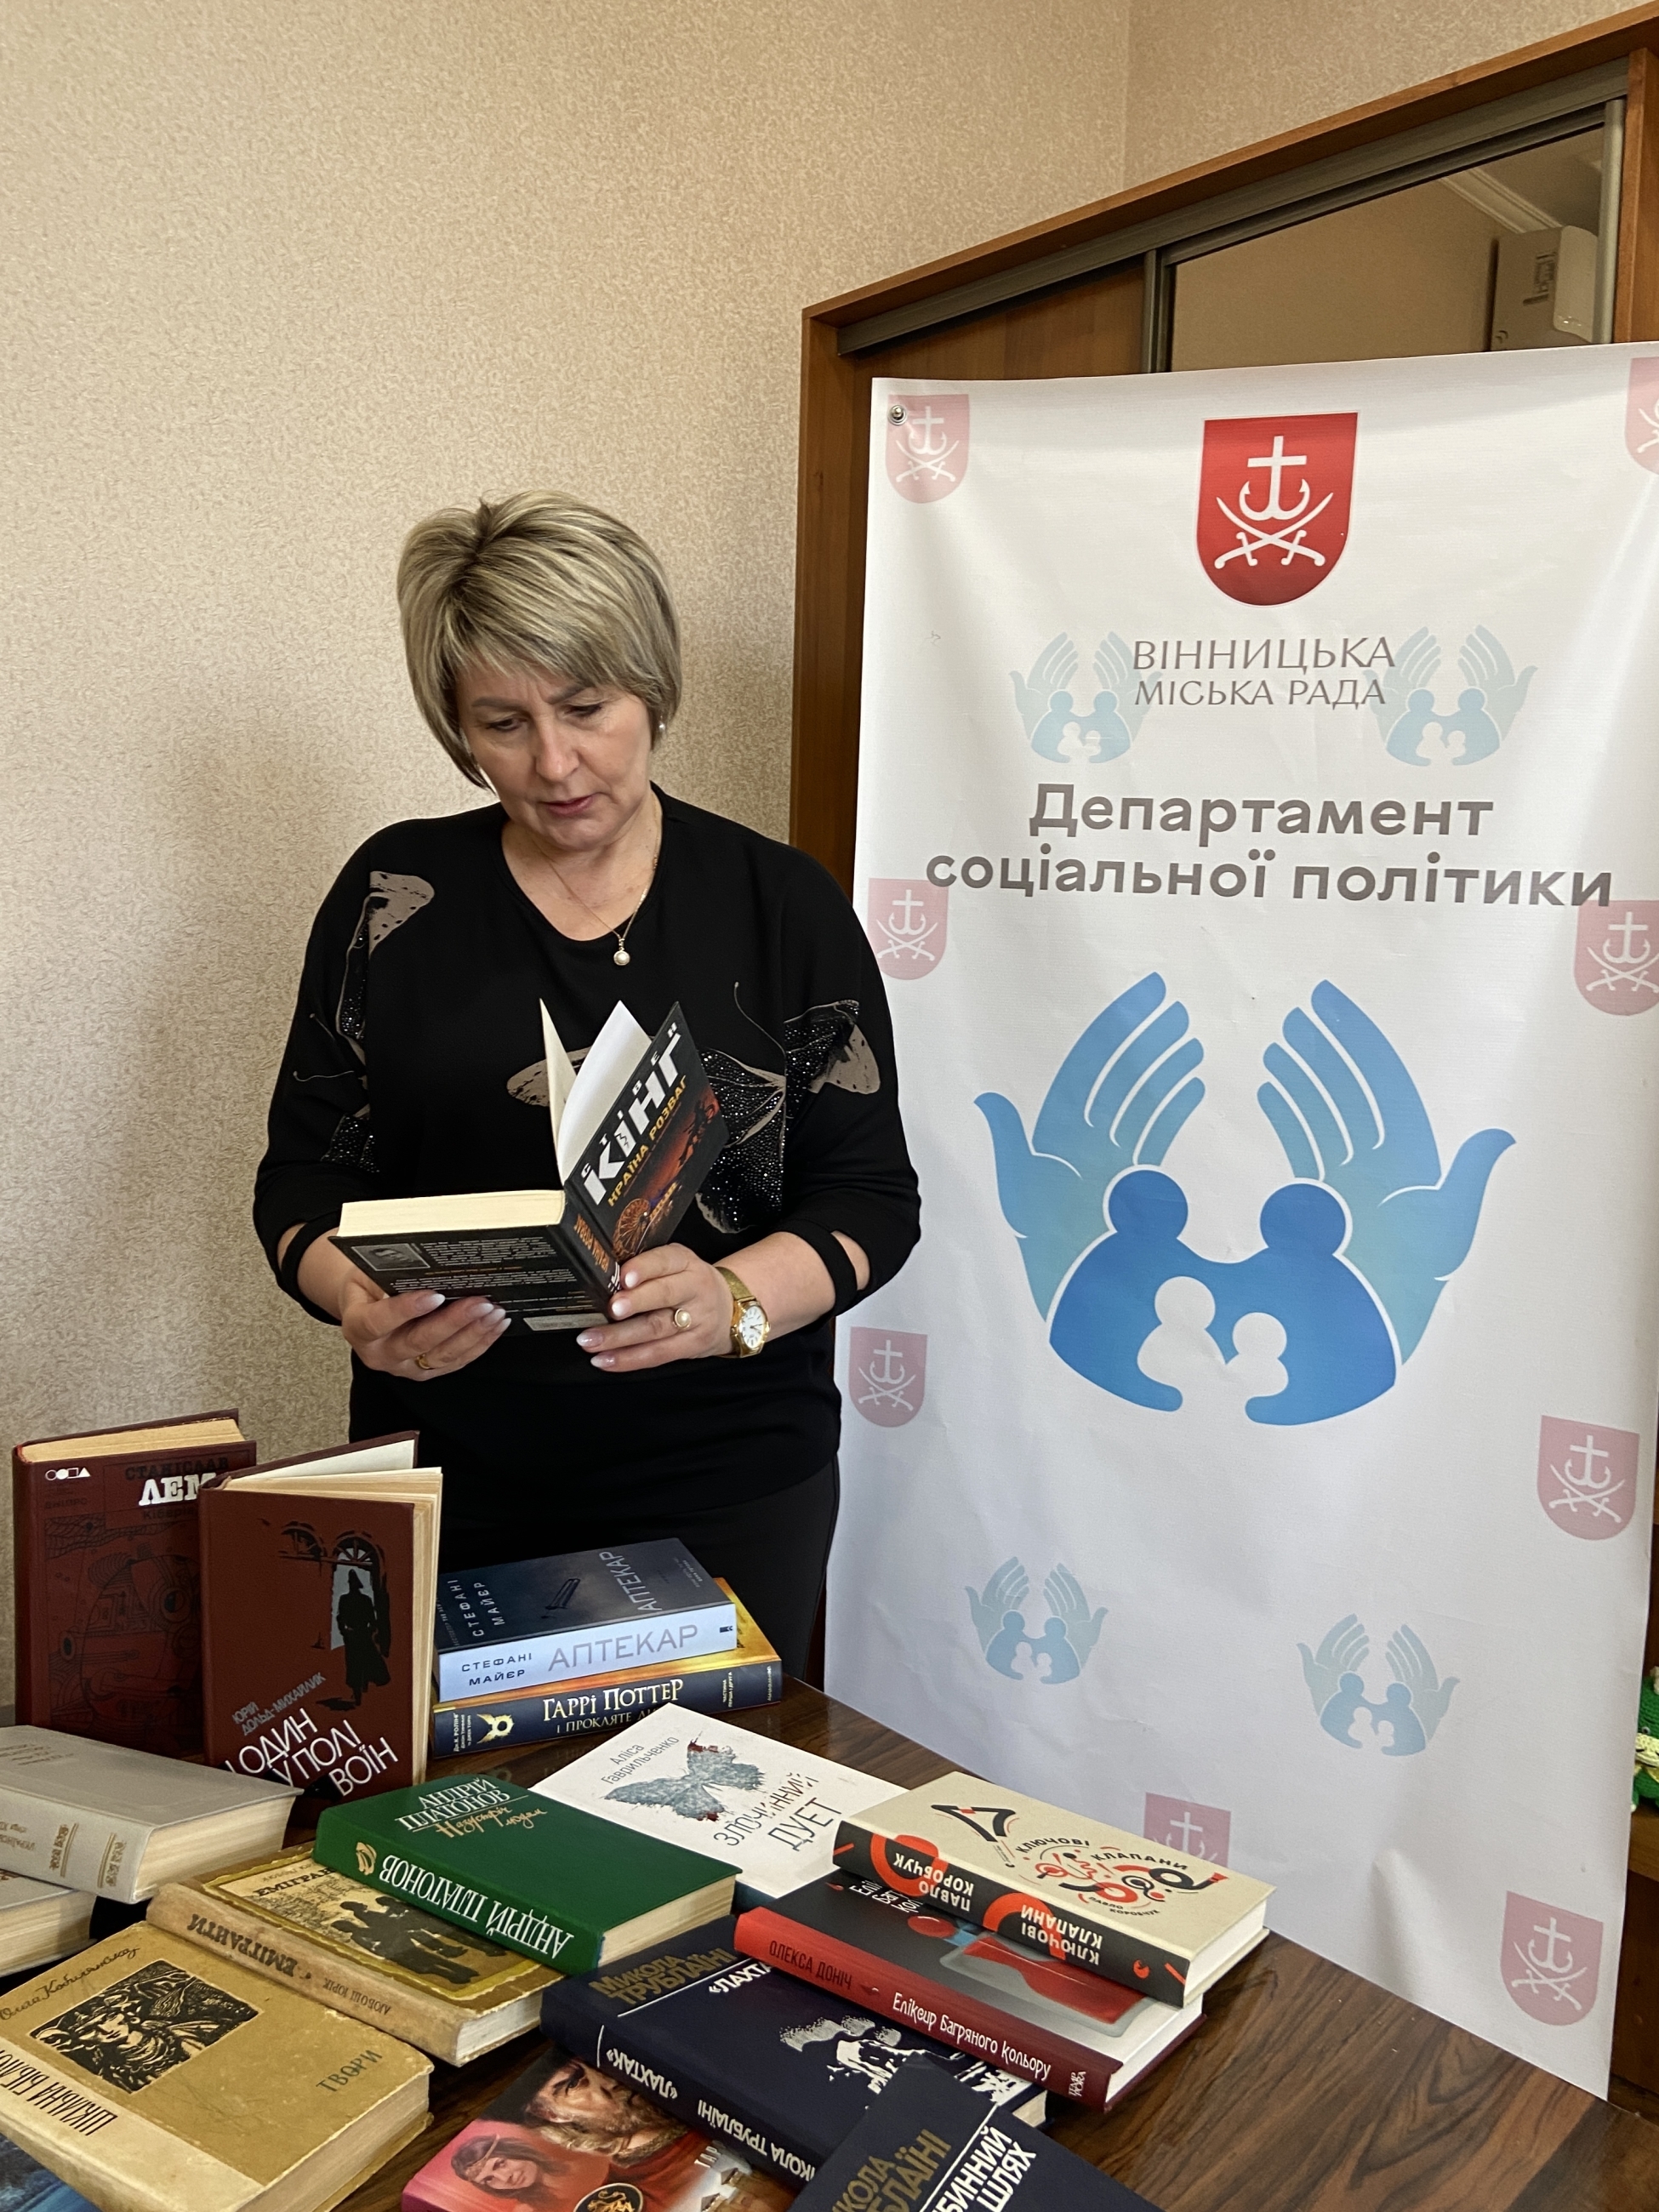 Працівники департаменту соцполітики у Вінниці зібрали книги для нацгвардійців